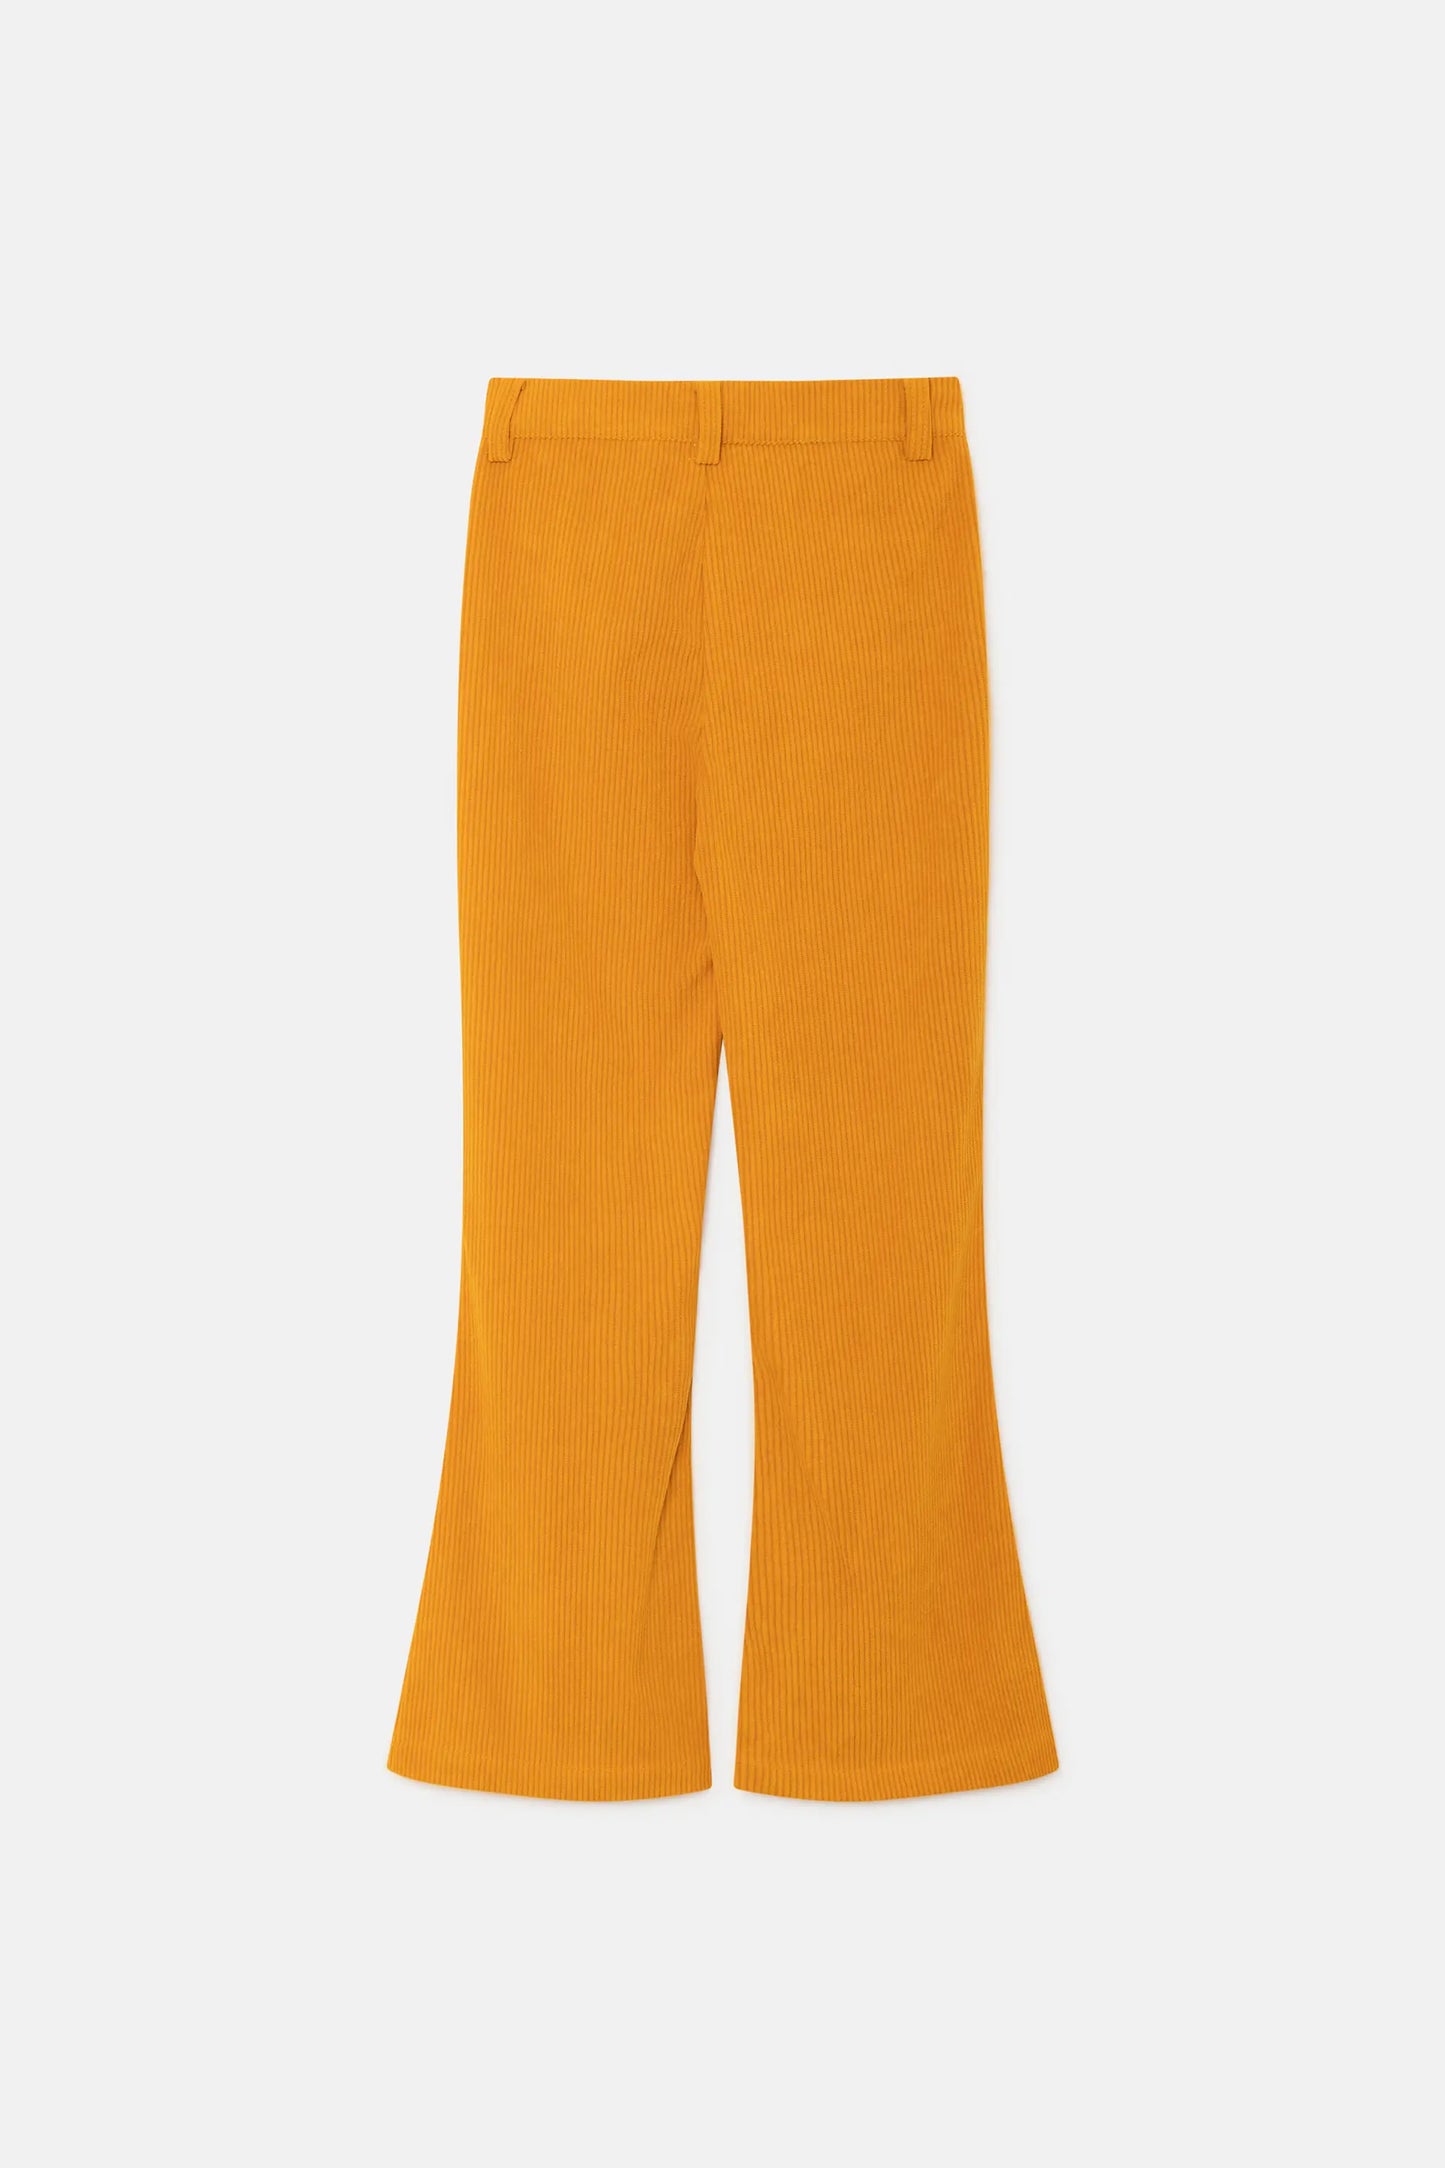 Pantalón de niña de pana amarillo